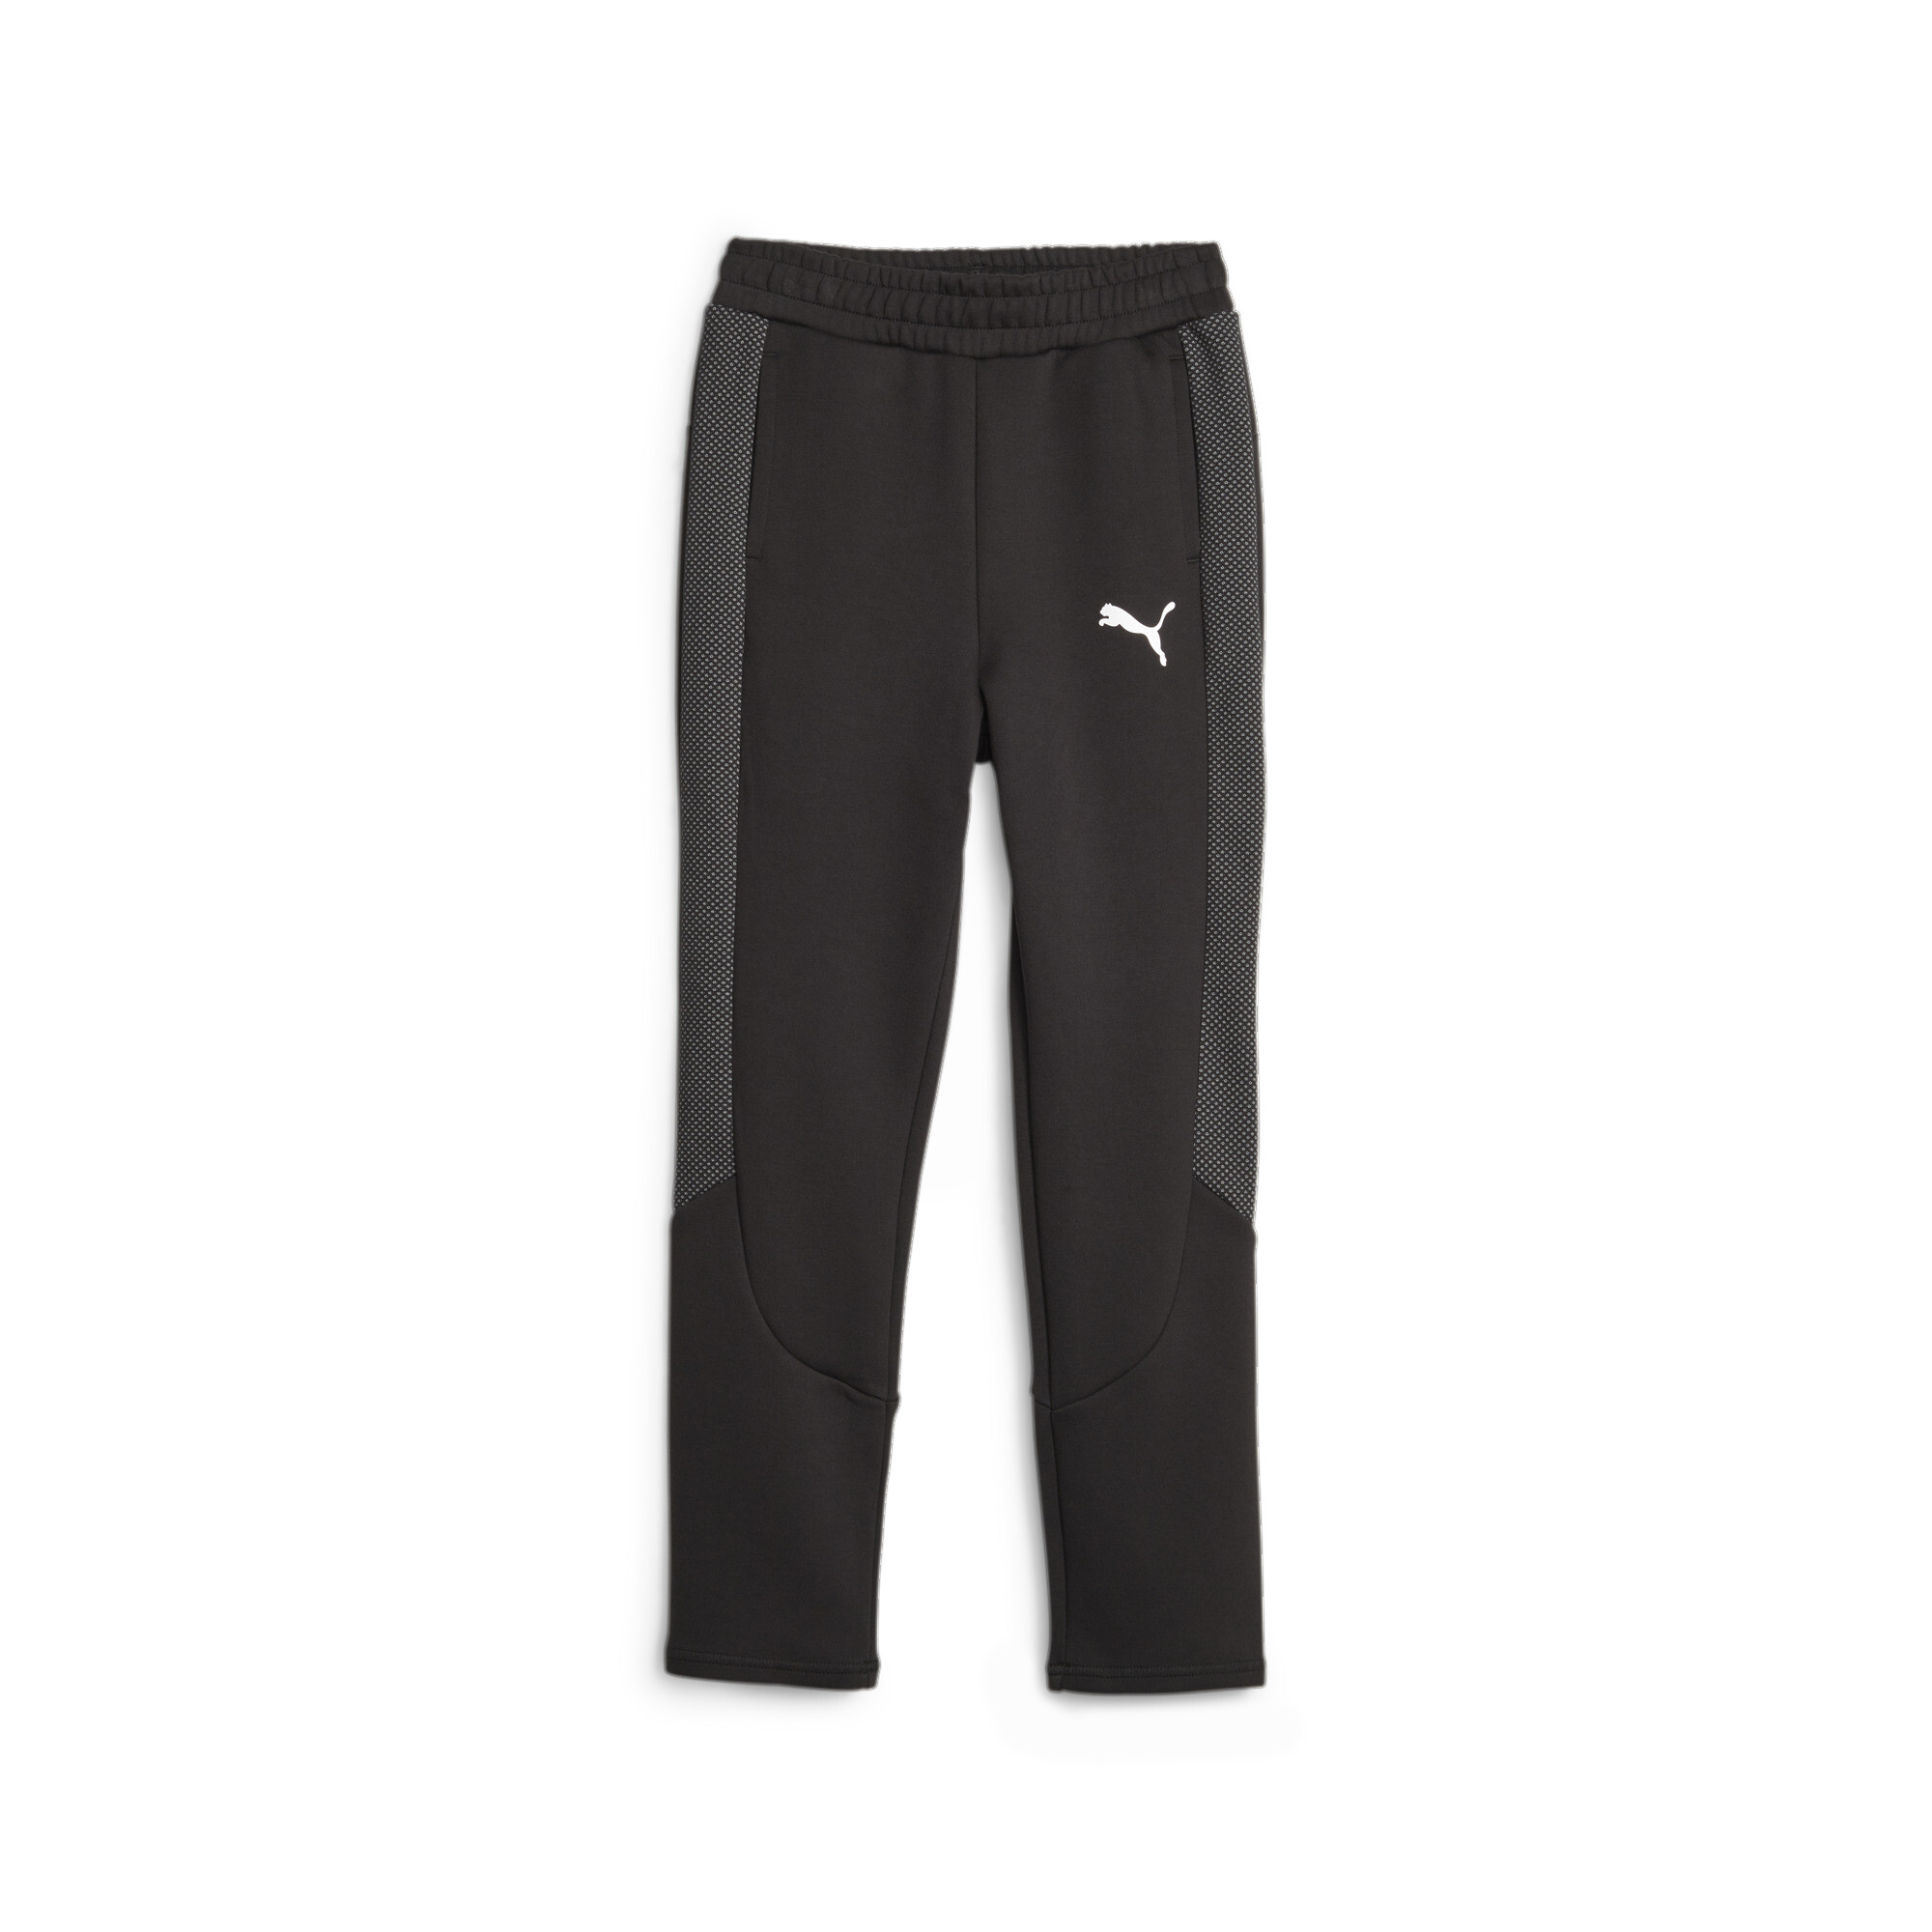 PUMA Evostripe Sweatpants In Black, Size 5-6 Youth